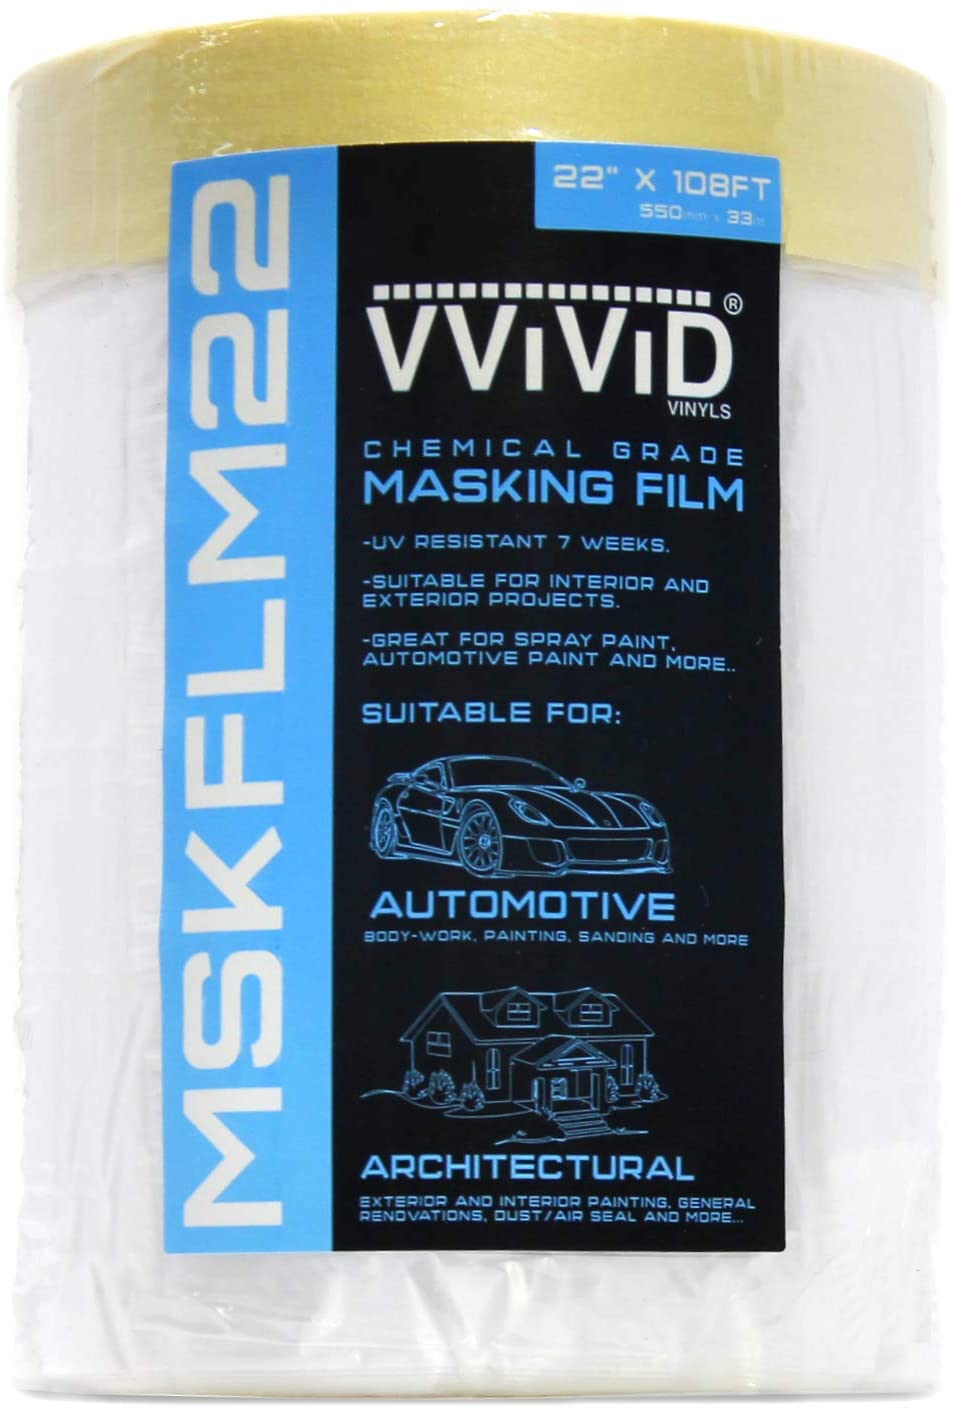 VViViD Chemical Adhesive Drape Masking Film 22" x 108ft (MCF) - The VViViD Vinyl Wrap Shop